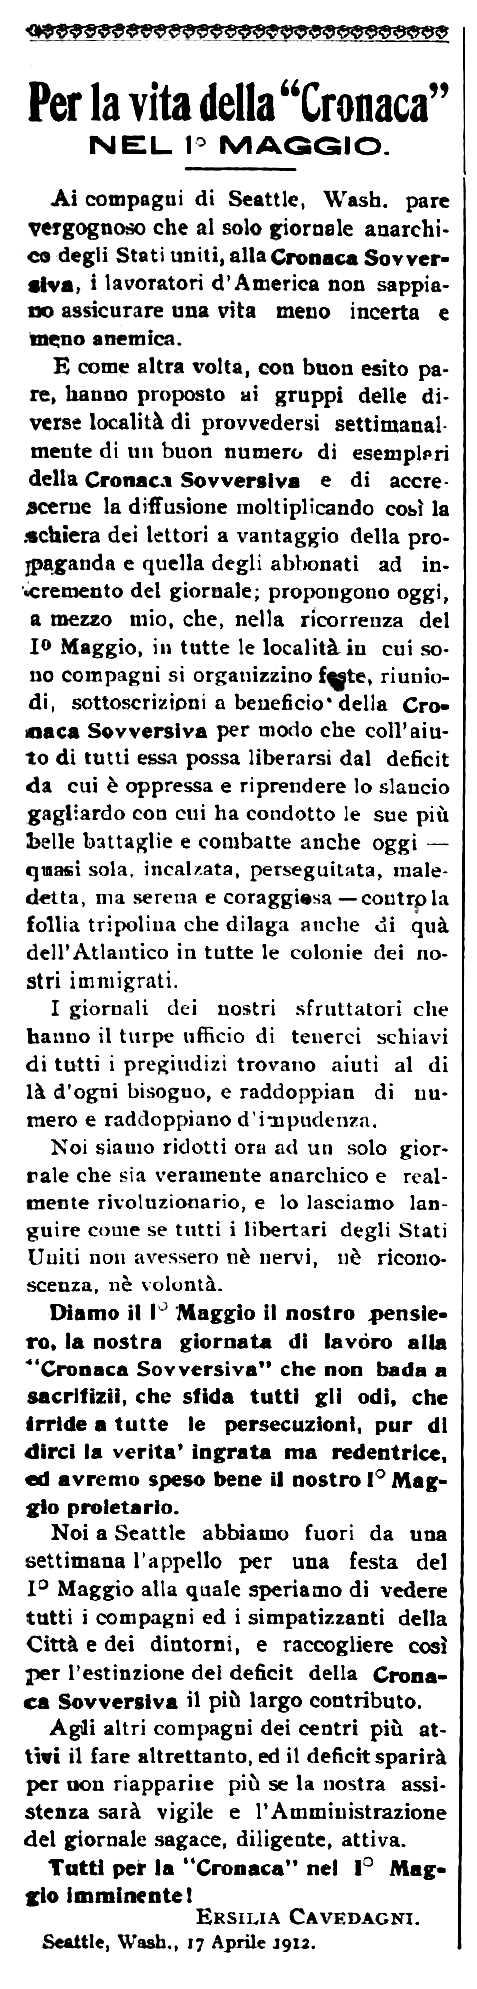 Crida d'Ersilia Cavedagni publicada en el periòdic de Barre (Vermont, EUA) "Cronaca Sovversiva" del 27 d'abril de 1912